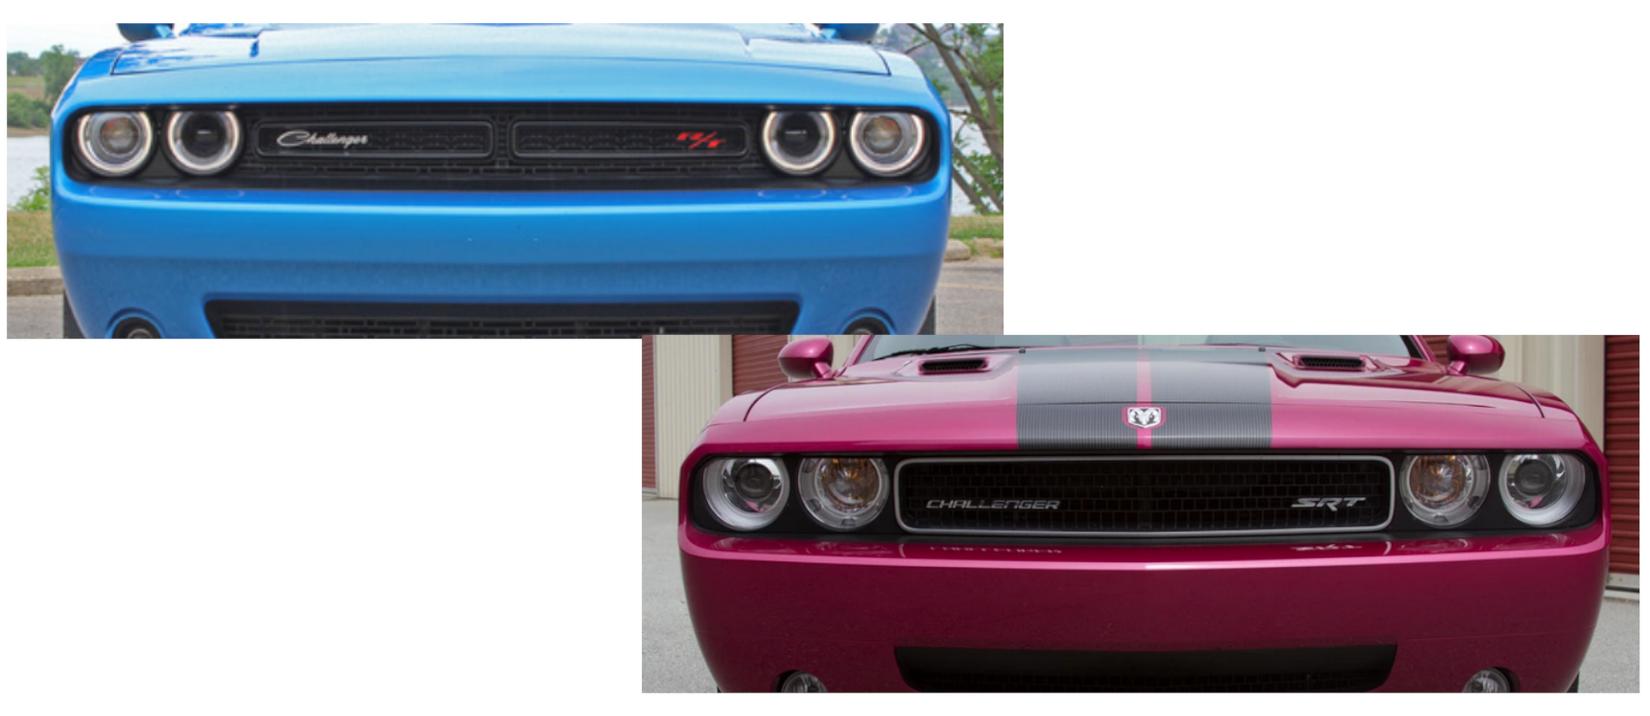 2015 vs 2014 Dodge Challenger front grille